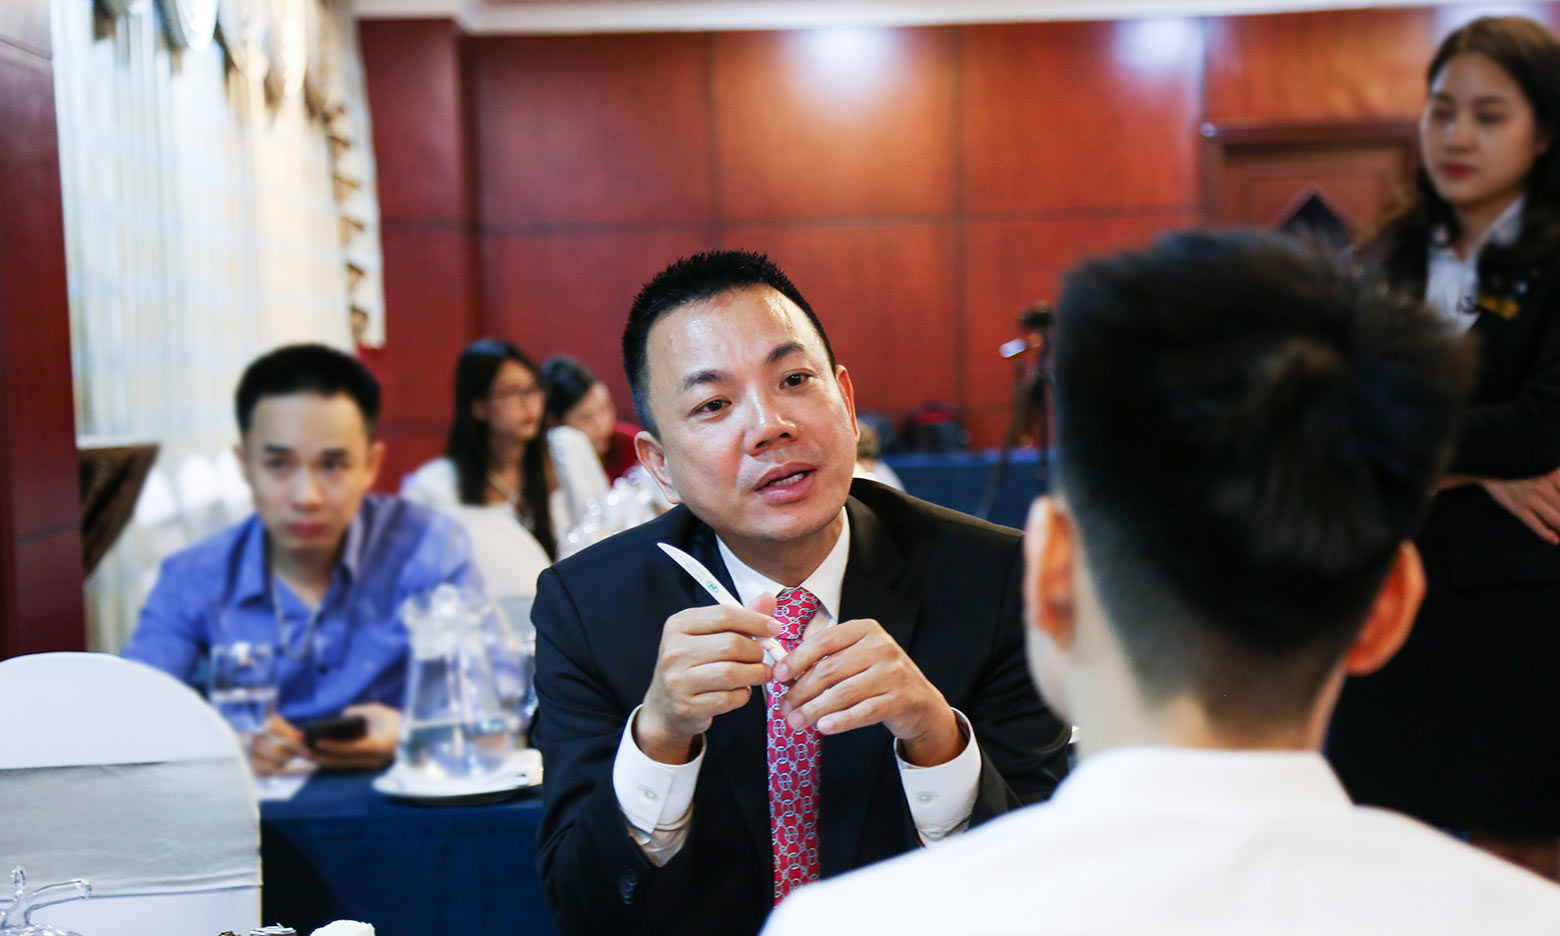 Tiến sĩ luật sư di trú Tony Huy Vu